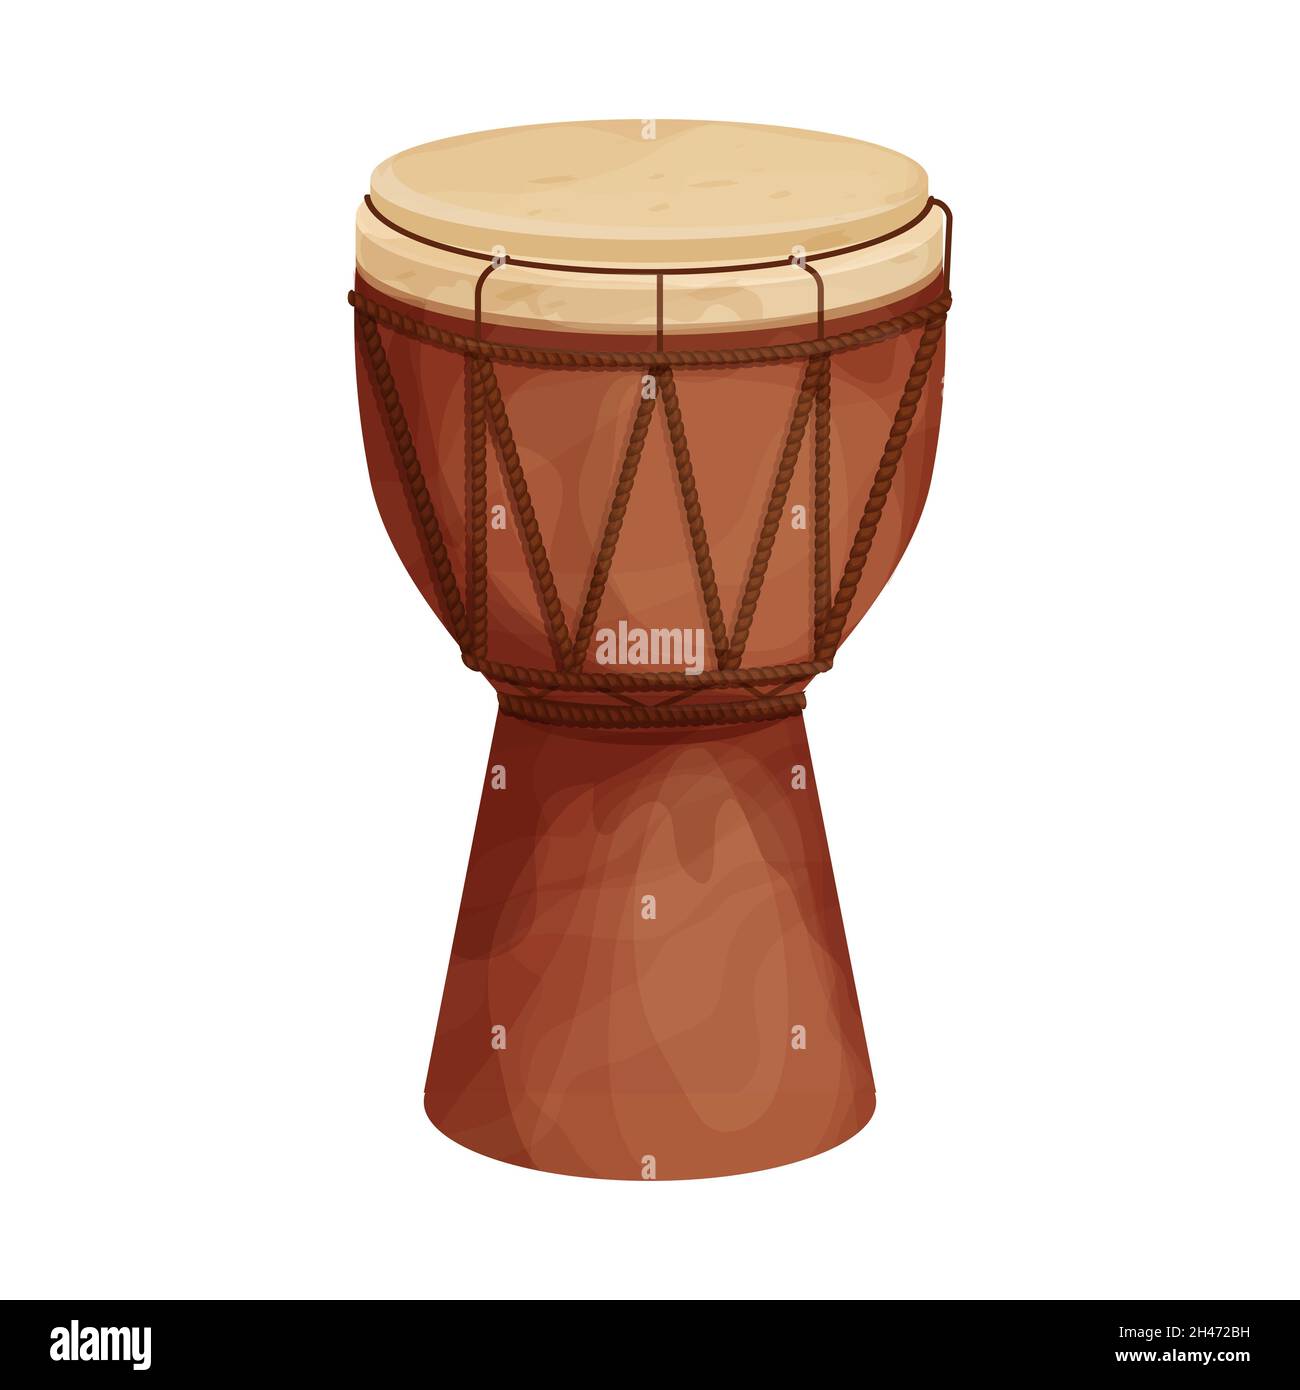 Tamburo djembe africano in stile cartone animato isolato su sfondo bianco. Strumento musicale tradizionale etnico. Illustrazione vettoriale Illustrazione Vettoriale